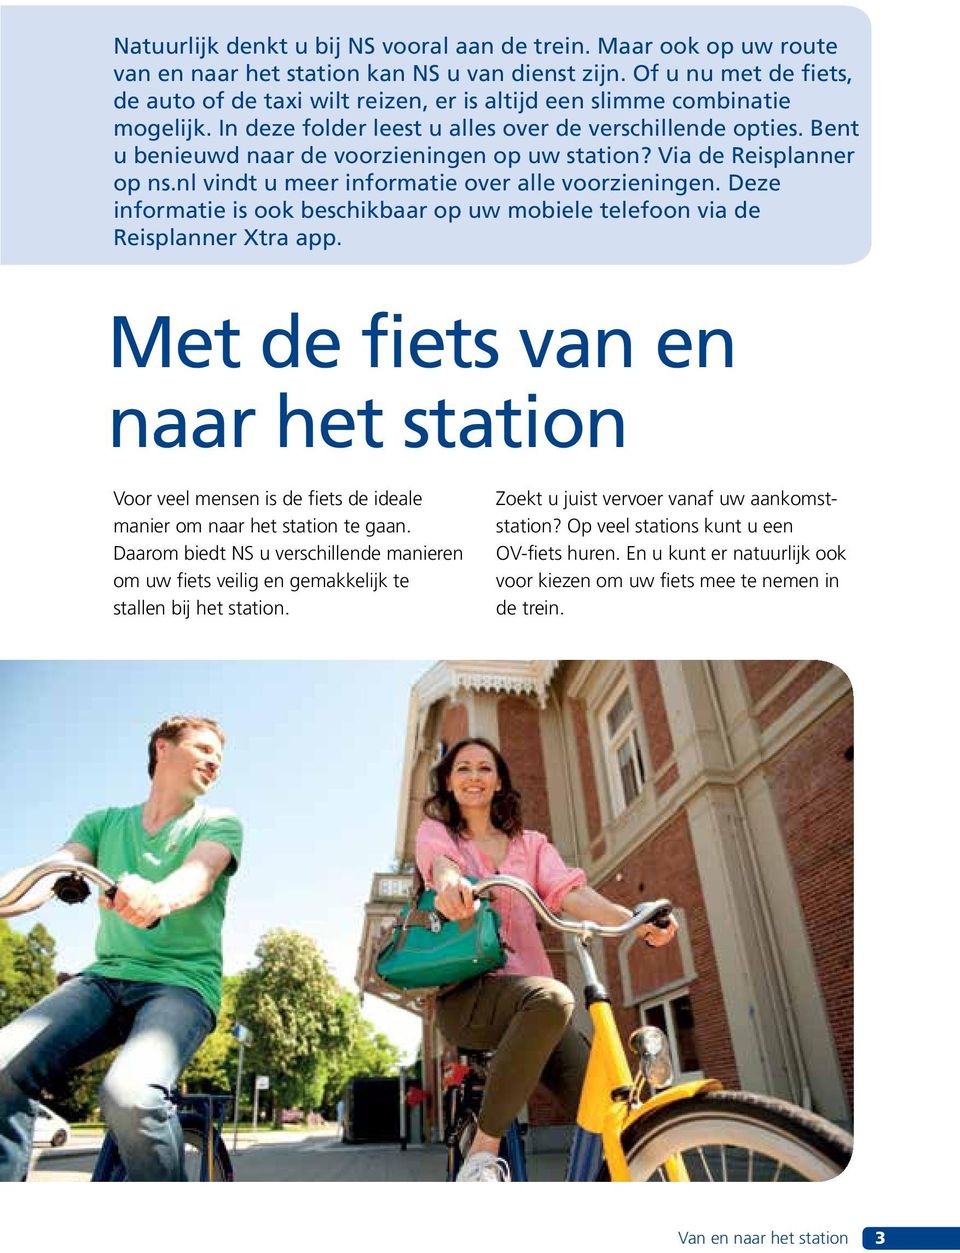 Bent u benieuwd naar de voorzieningen op uw station? Via de Reisplanner op ns.nl vindt u meer informatie over alle voorzieningen.